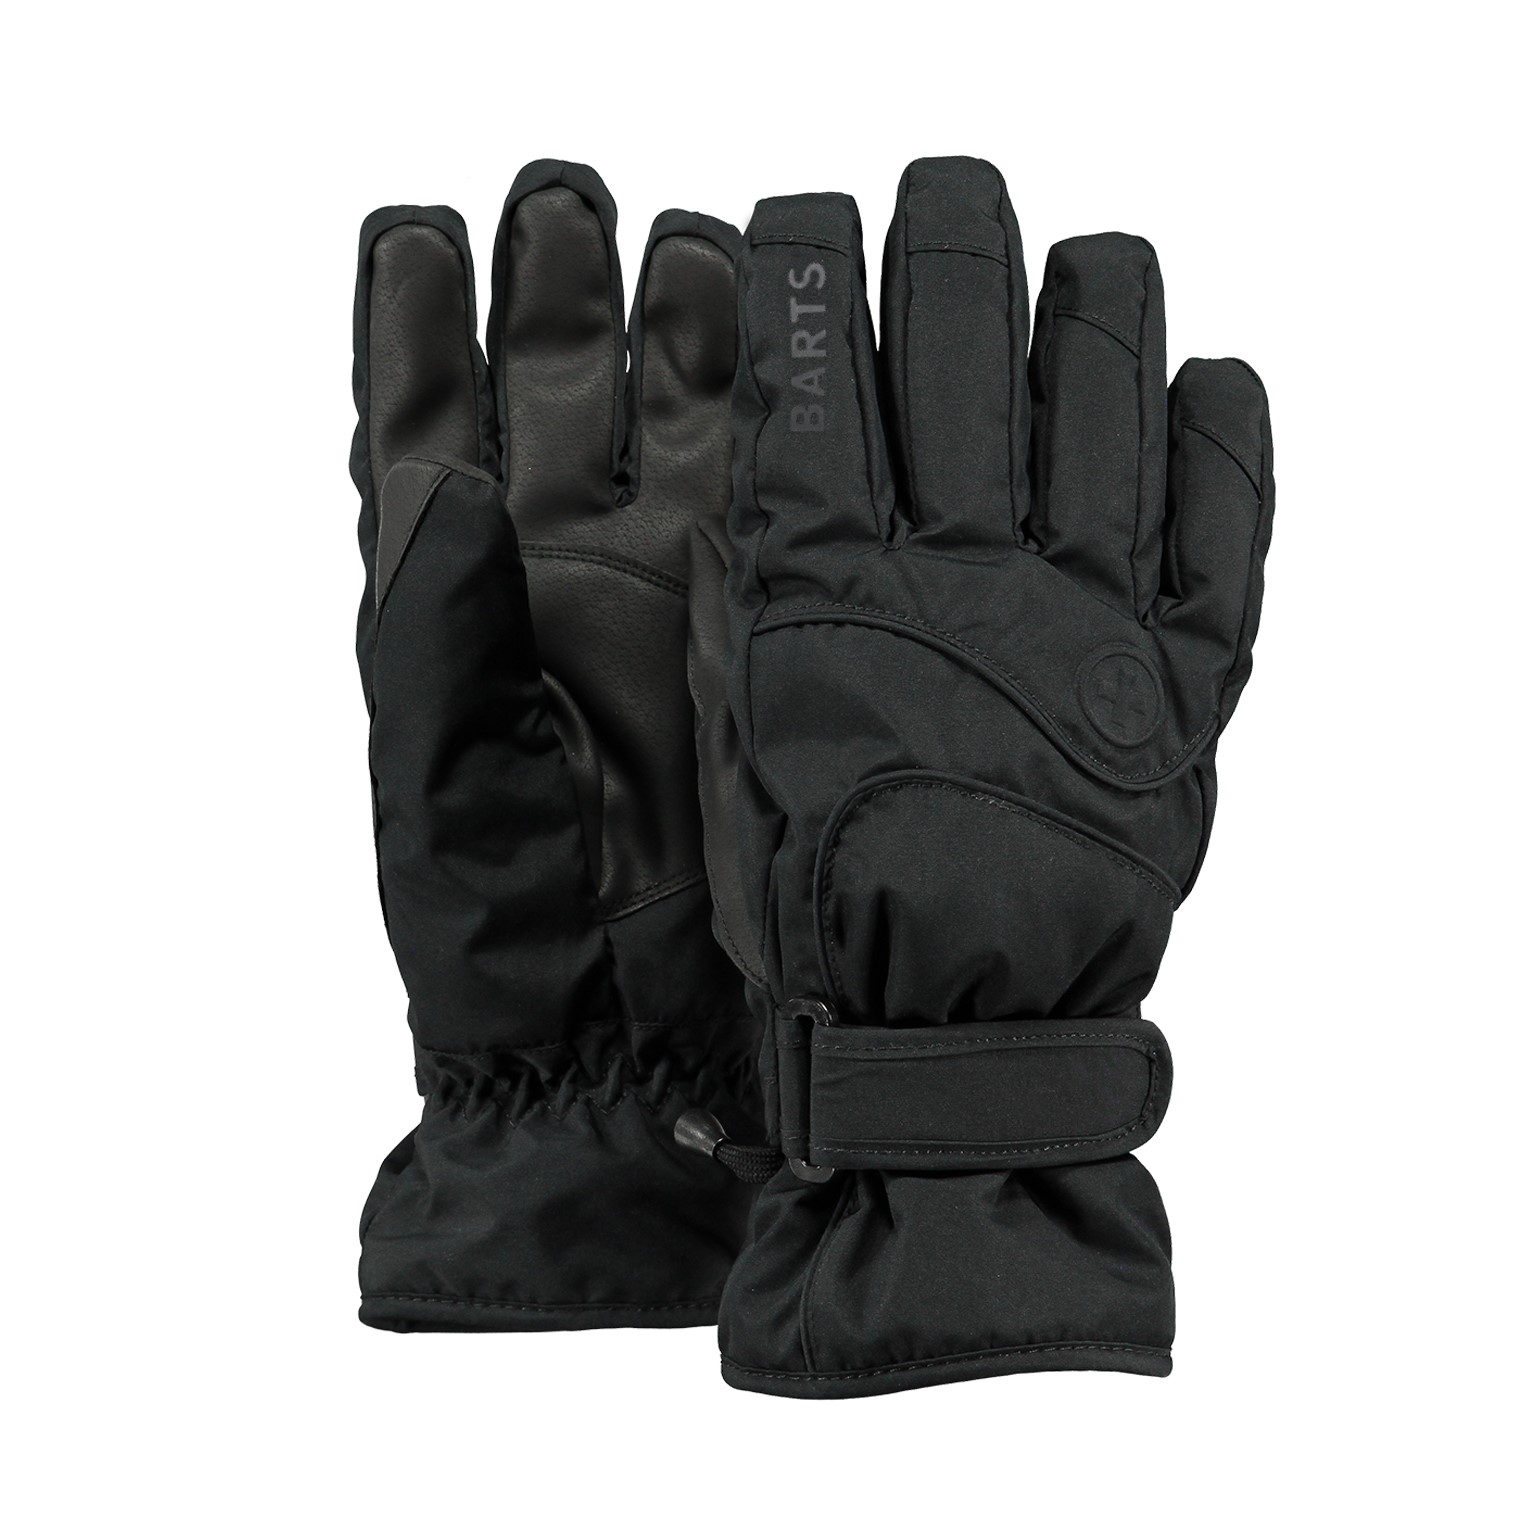 gemakkelijk te dragen comfortabel handig deze vingerloze handschoenen zouden een geweldig cadeau zijn Gezellig Accessoires Handschoenen & wanten Winterhandschoenen 